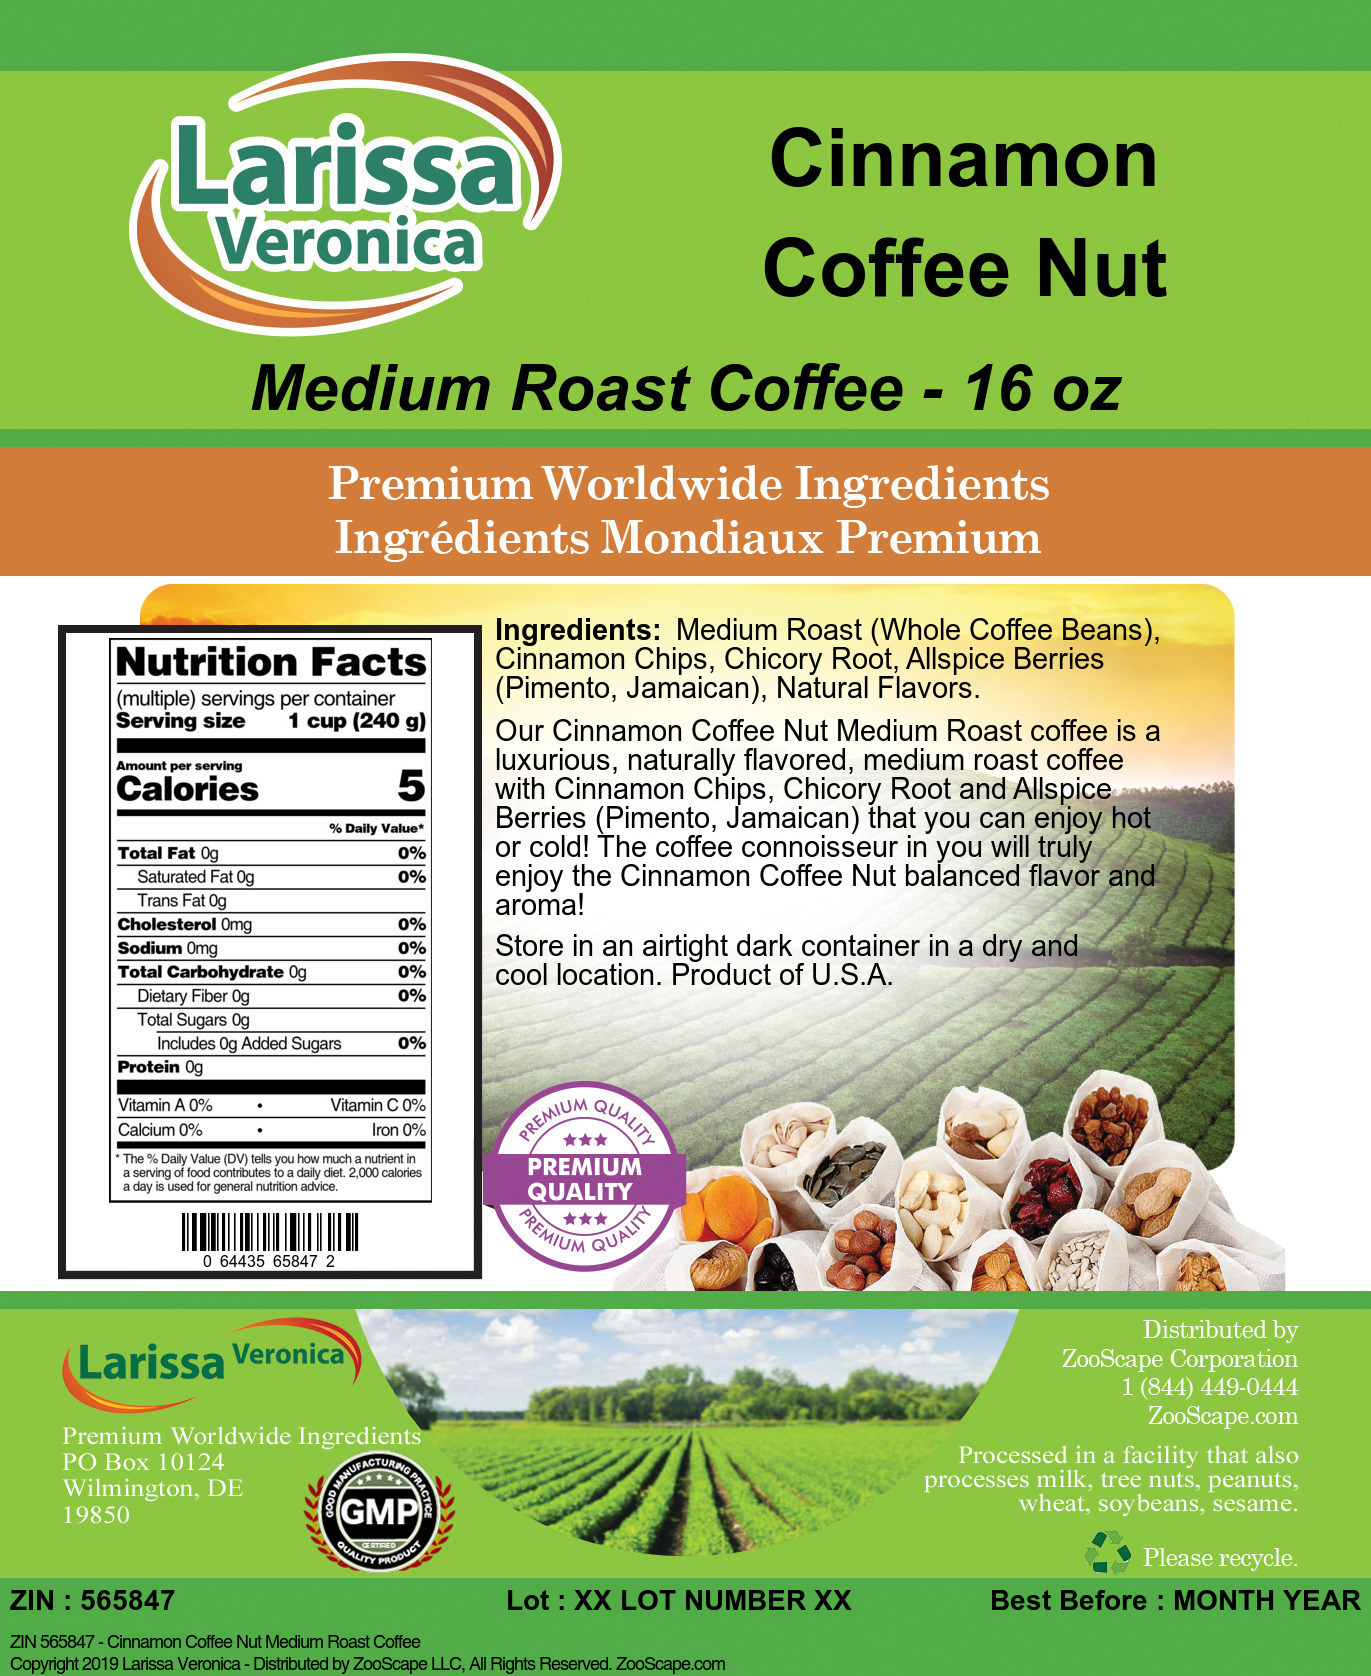 Cinnamon Coffee Nut Medium Roast Coffee - Label